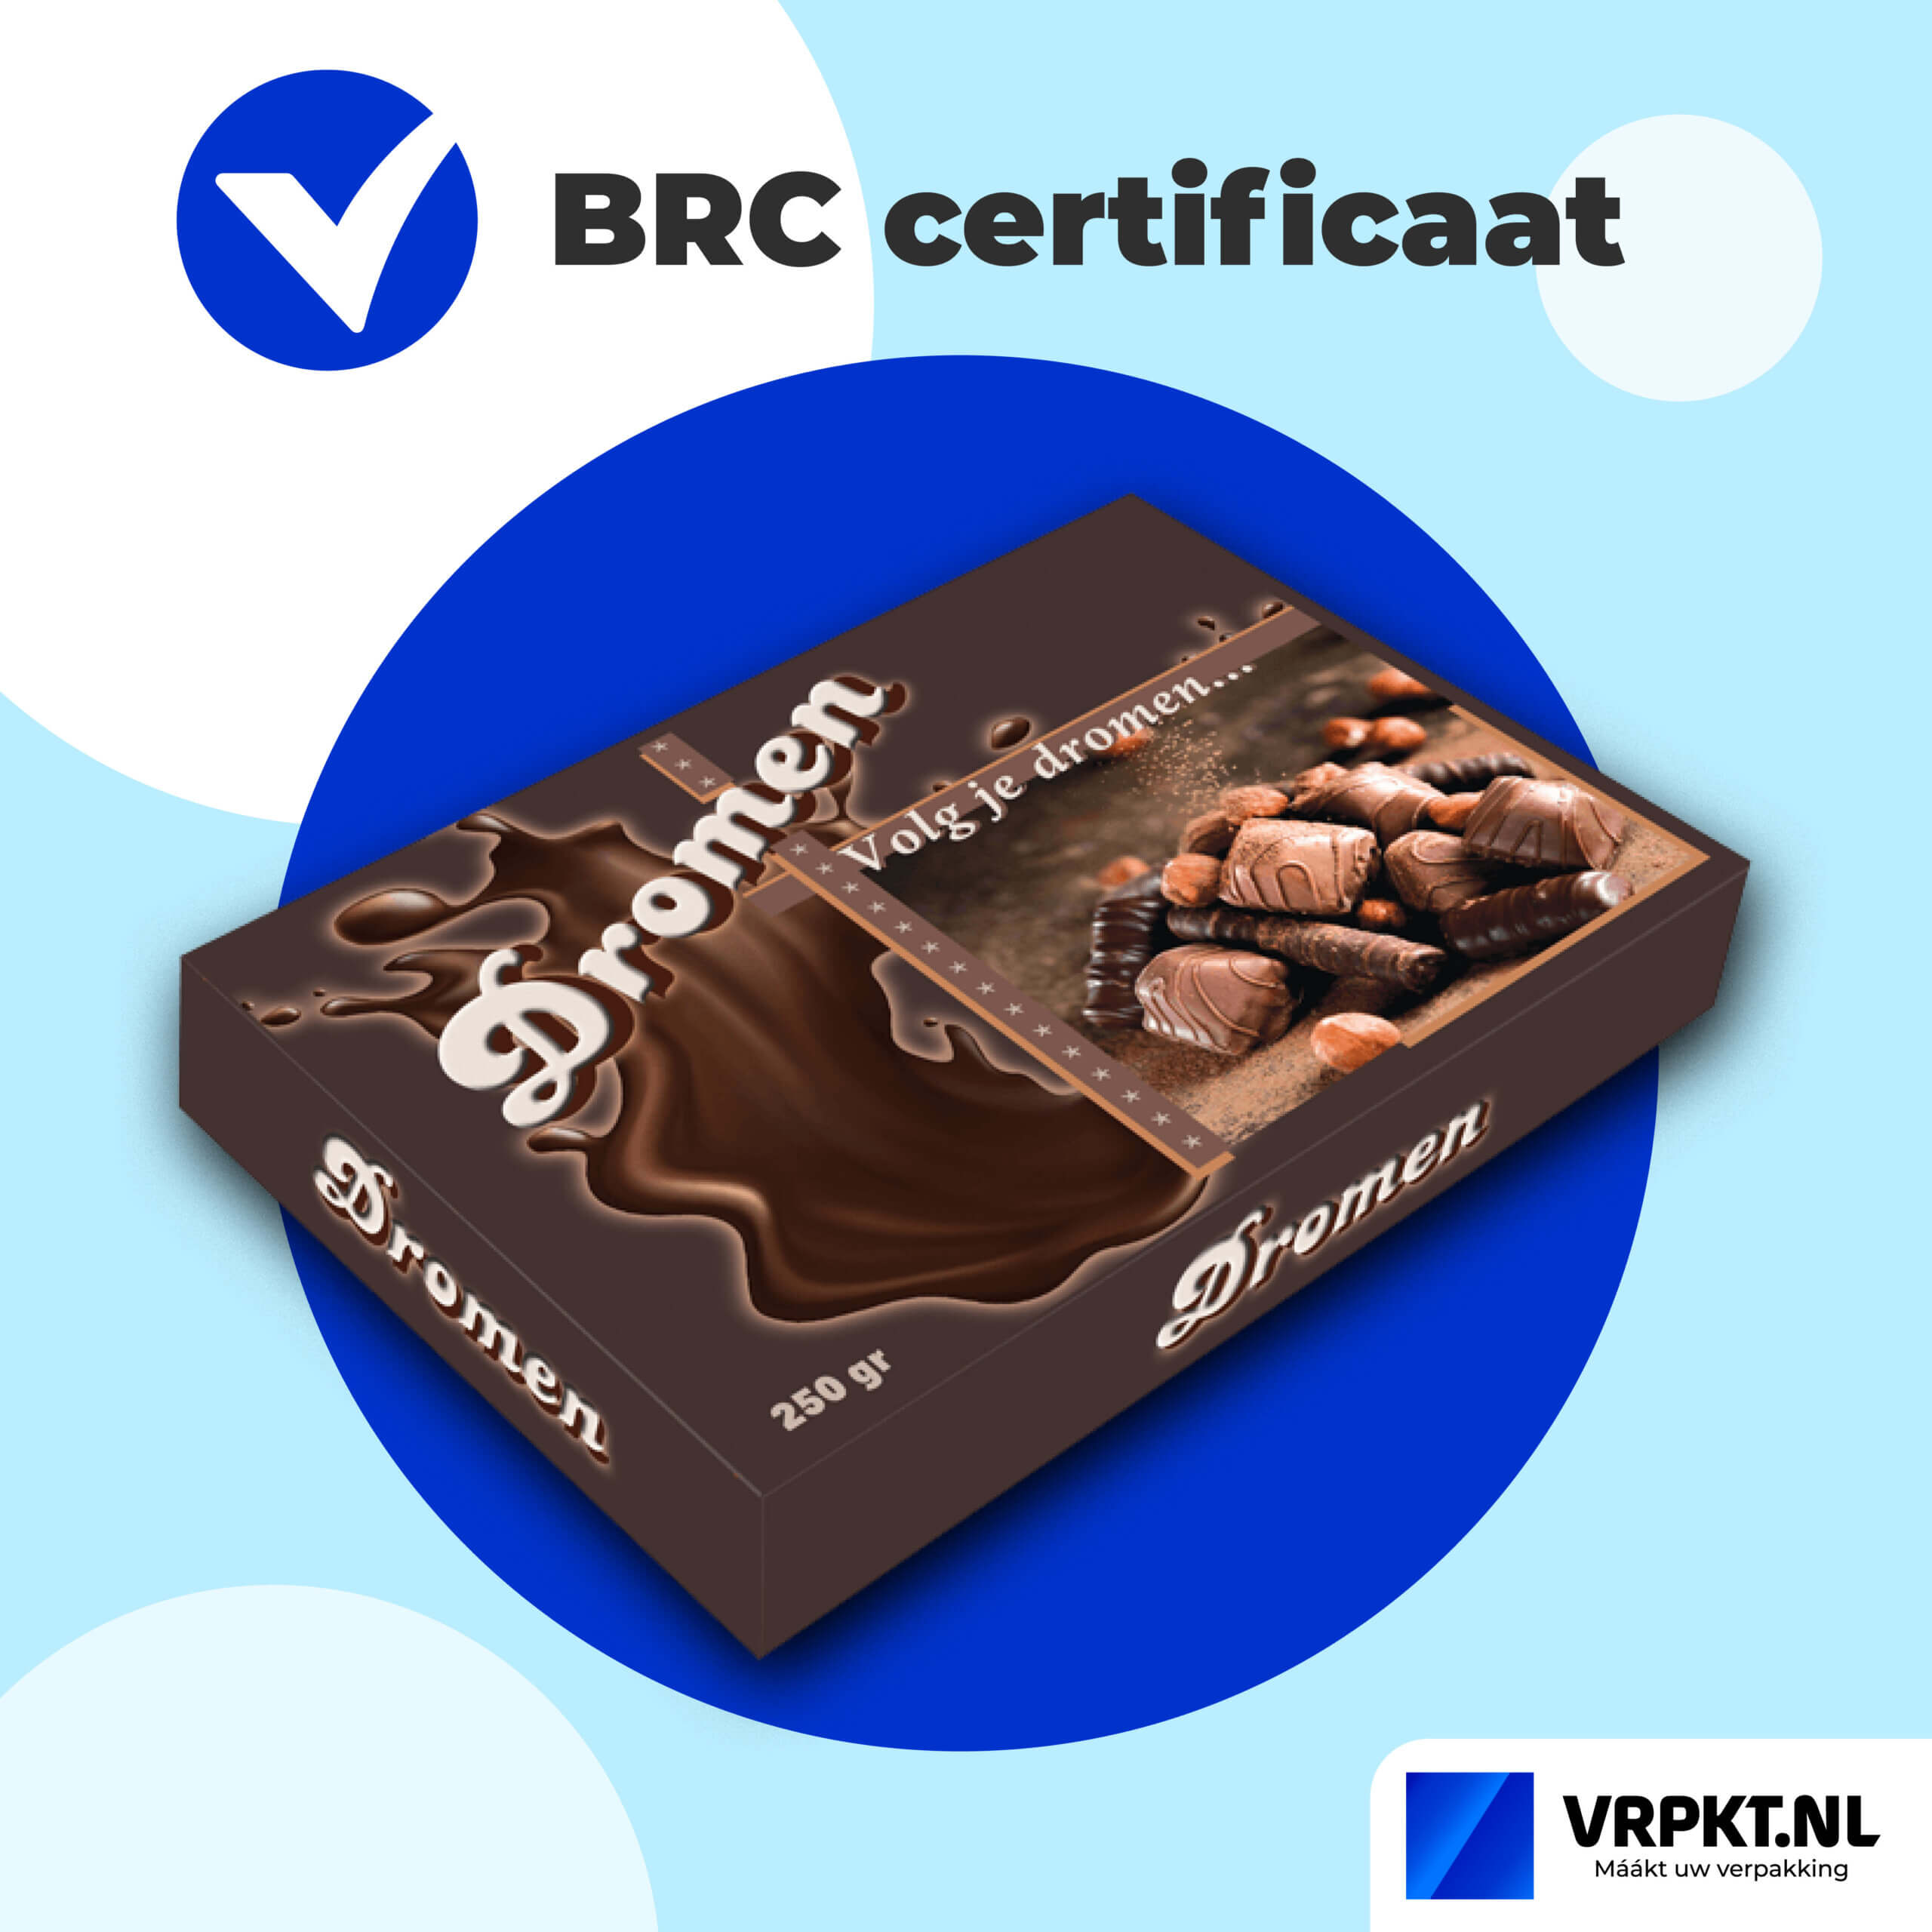 AA+ grade behaald van het BRC Packaging-certificaat